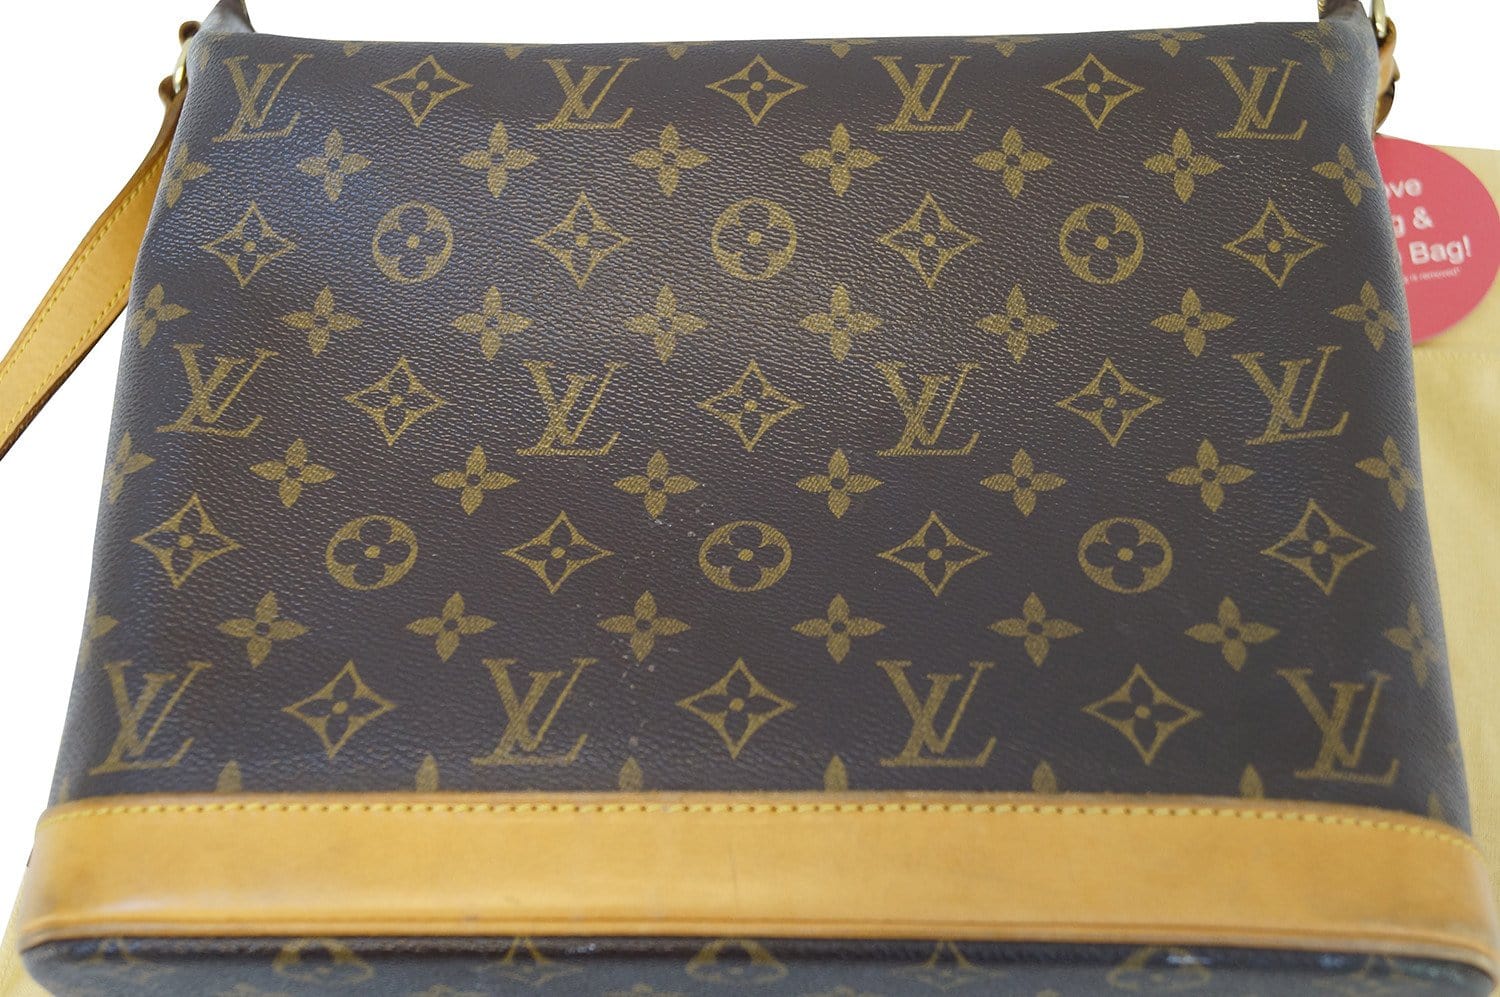 Louis Vuitton, an 'Amfar Three Vanity Star' bag, Sharon Stone for